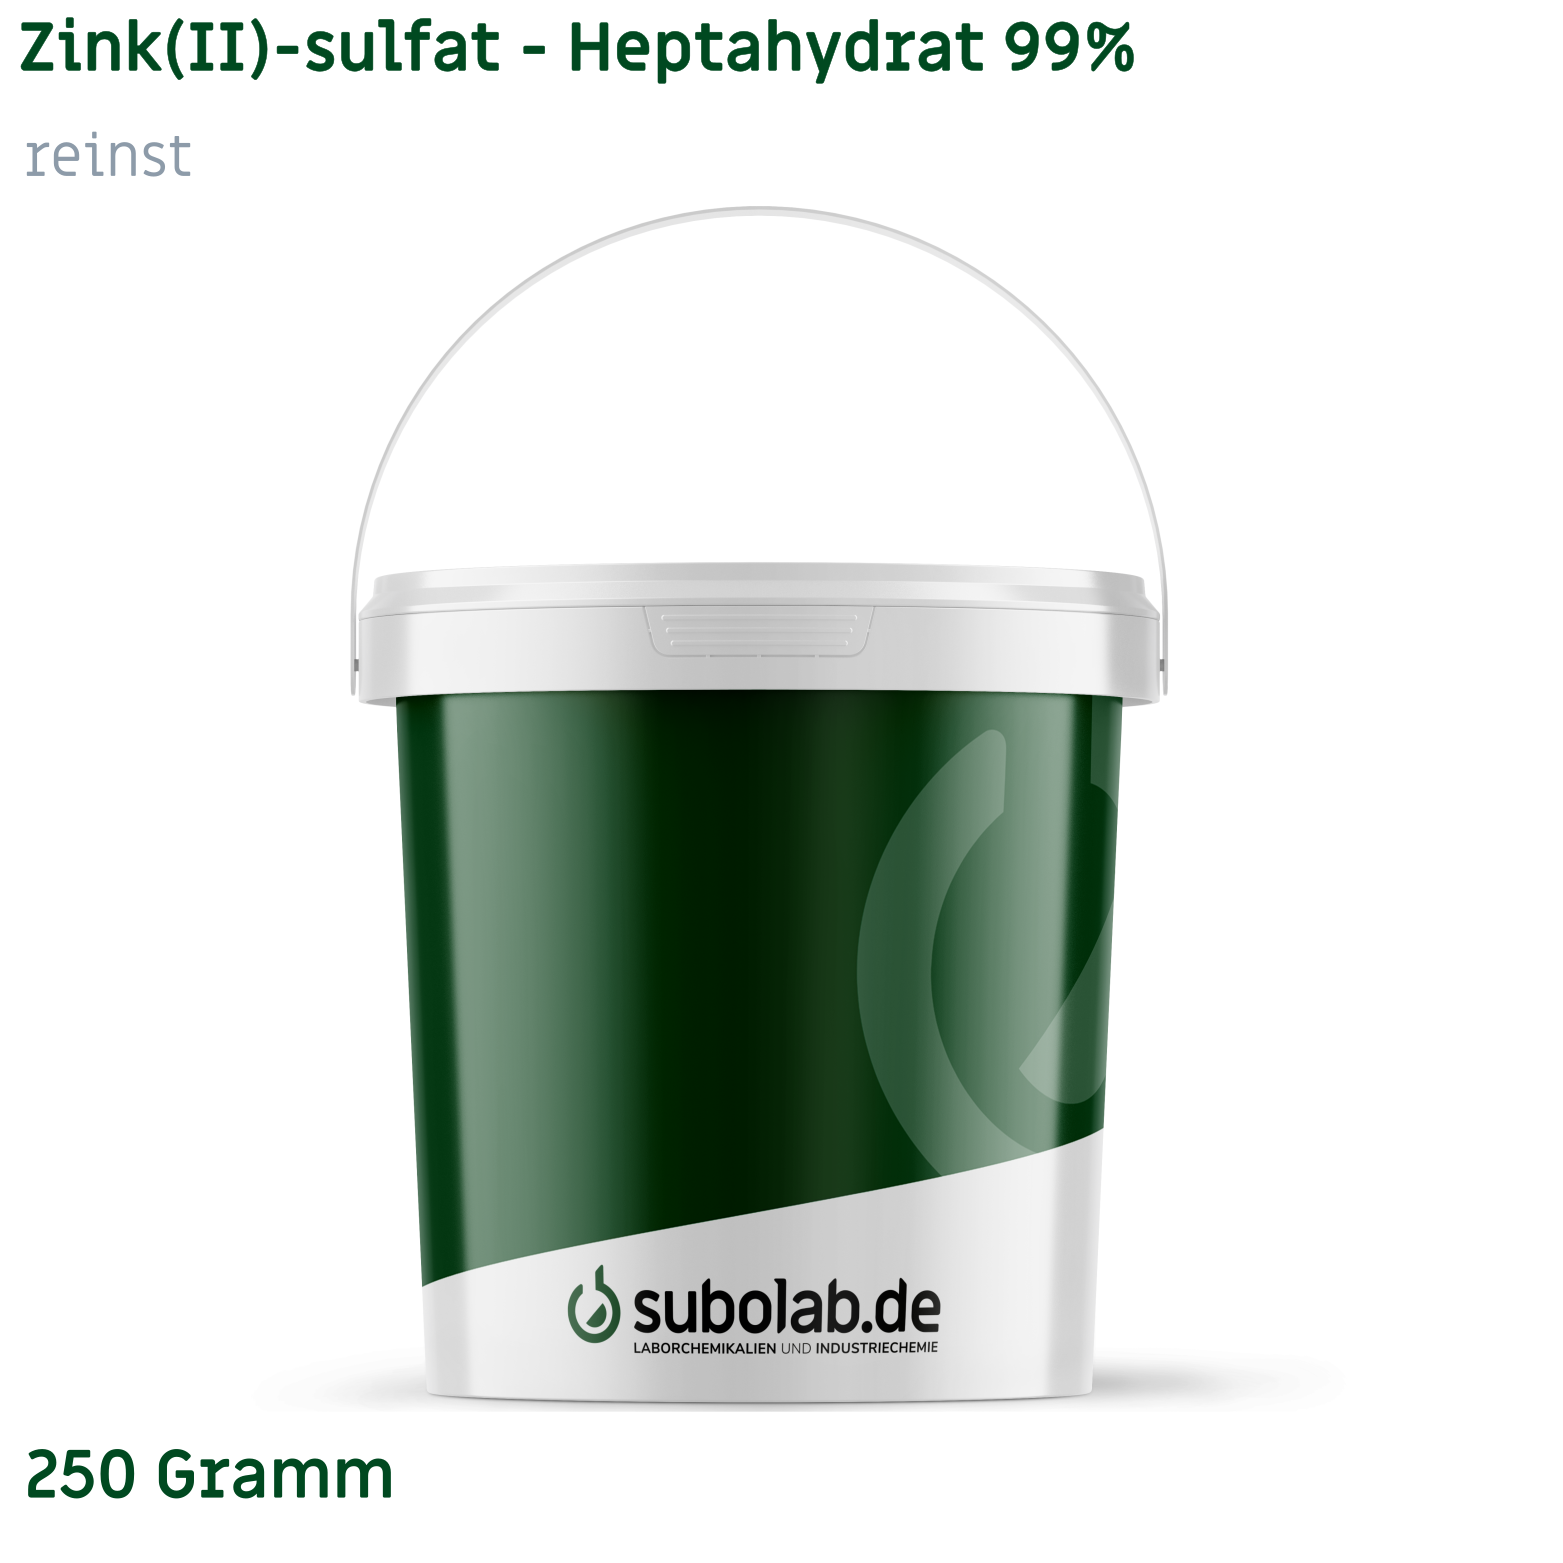 Bild von Zink(II)-sulfat - Heptahydrat 99% reinst (250 Gramm)